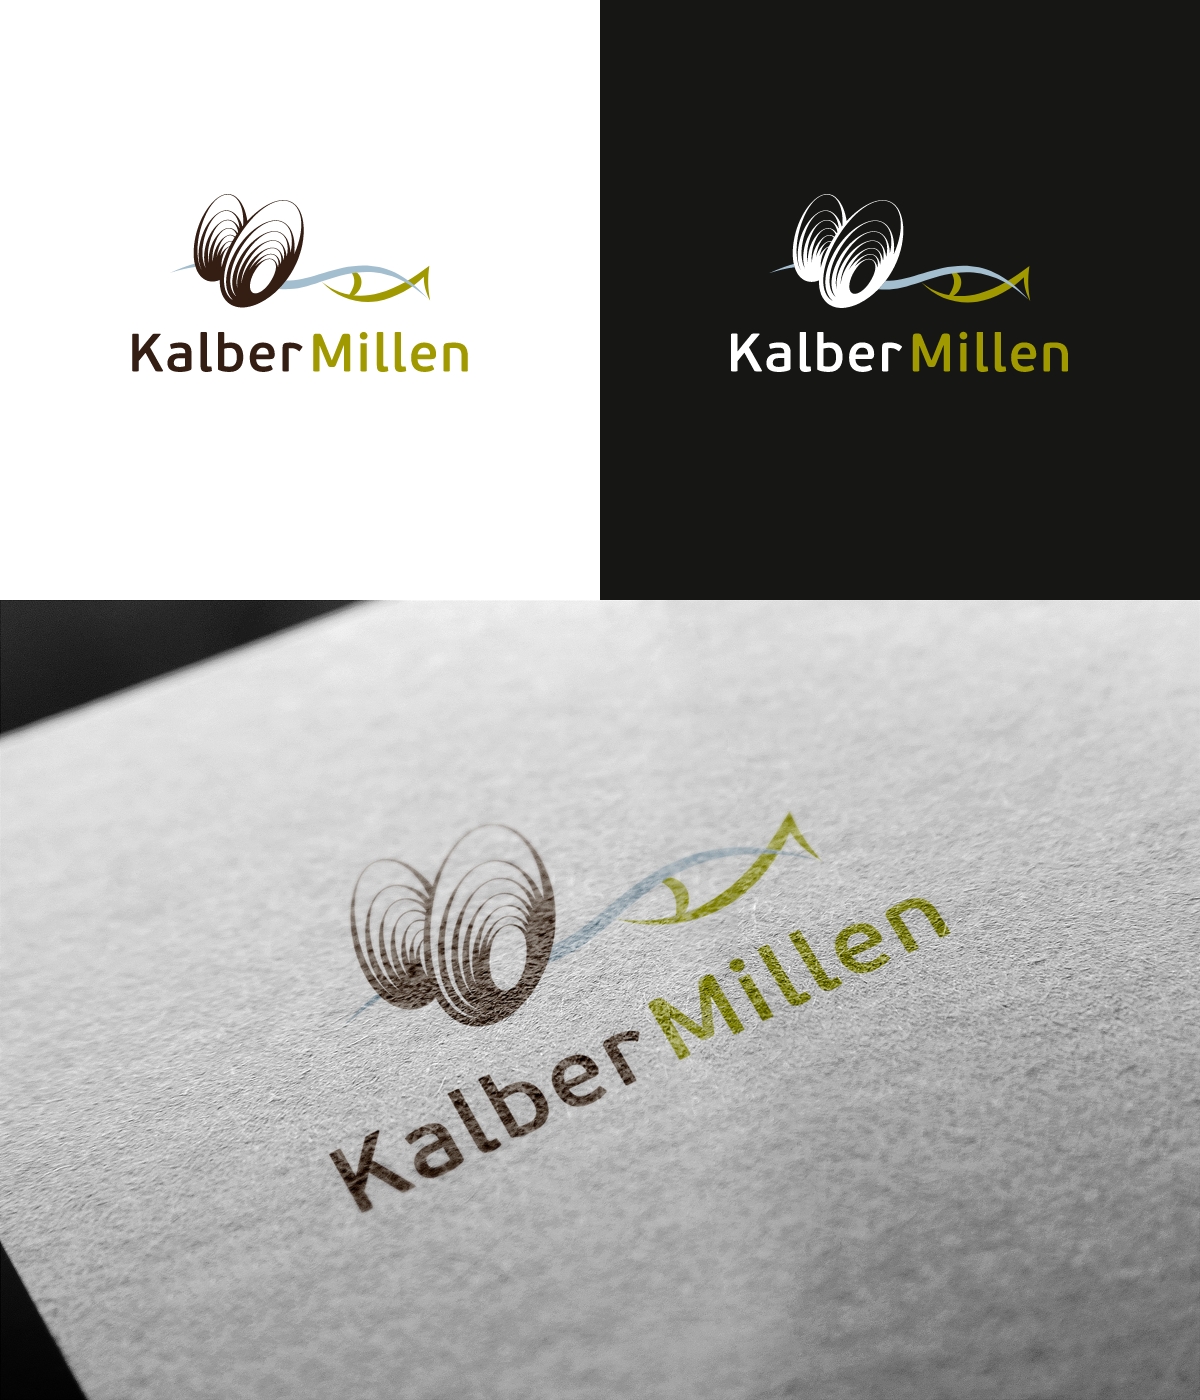 Logo Kalborner Mühle - Süßwassermuschel-Zucht und Wassererlebniszentrum in einem Logo vereint